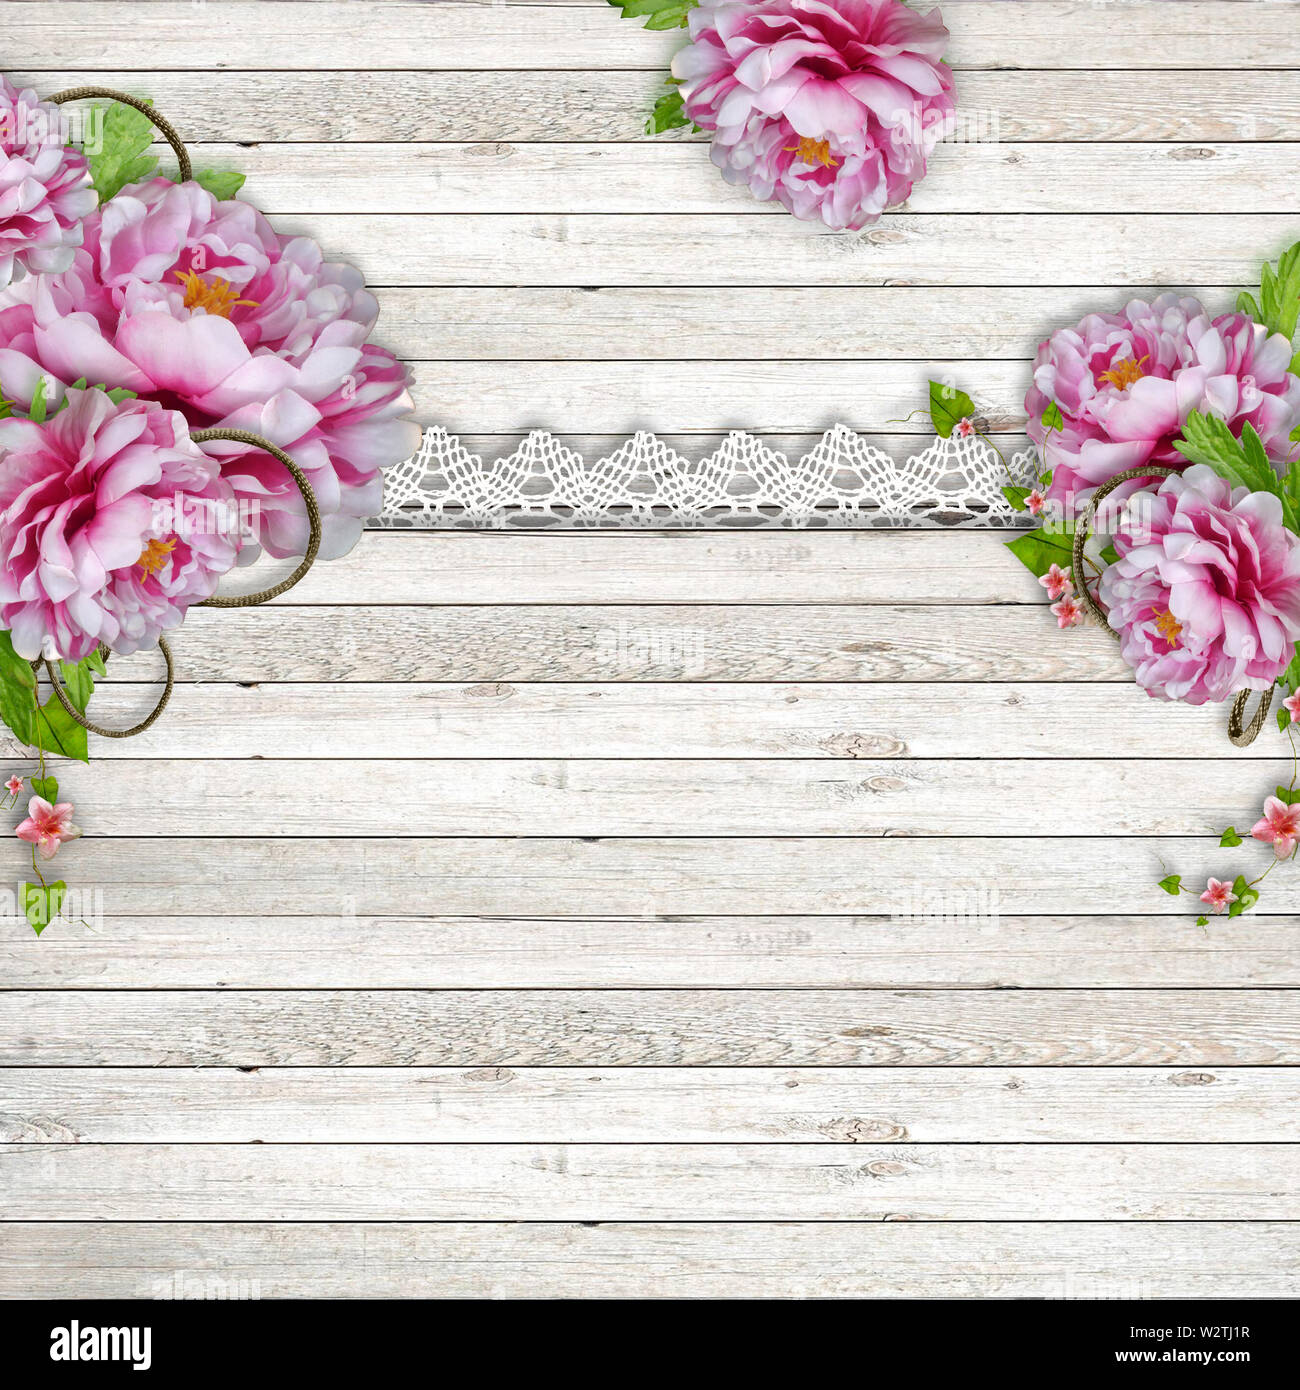 Vintage de madera con fondo rosa hermosa puntilla de peonías y puede utilizarse como tarjeta de invitación para bodas, cumpleaños y otros vacaciones y verano Foto de stock